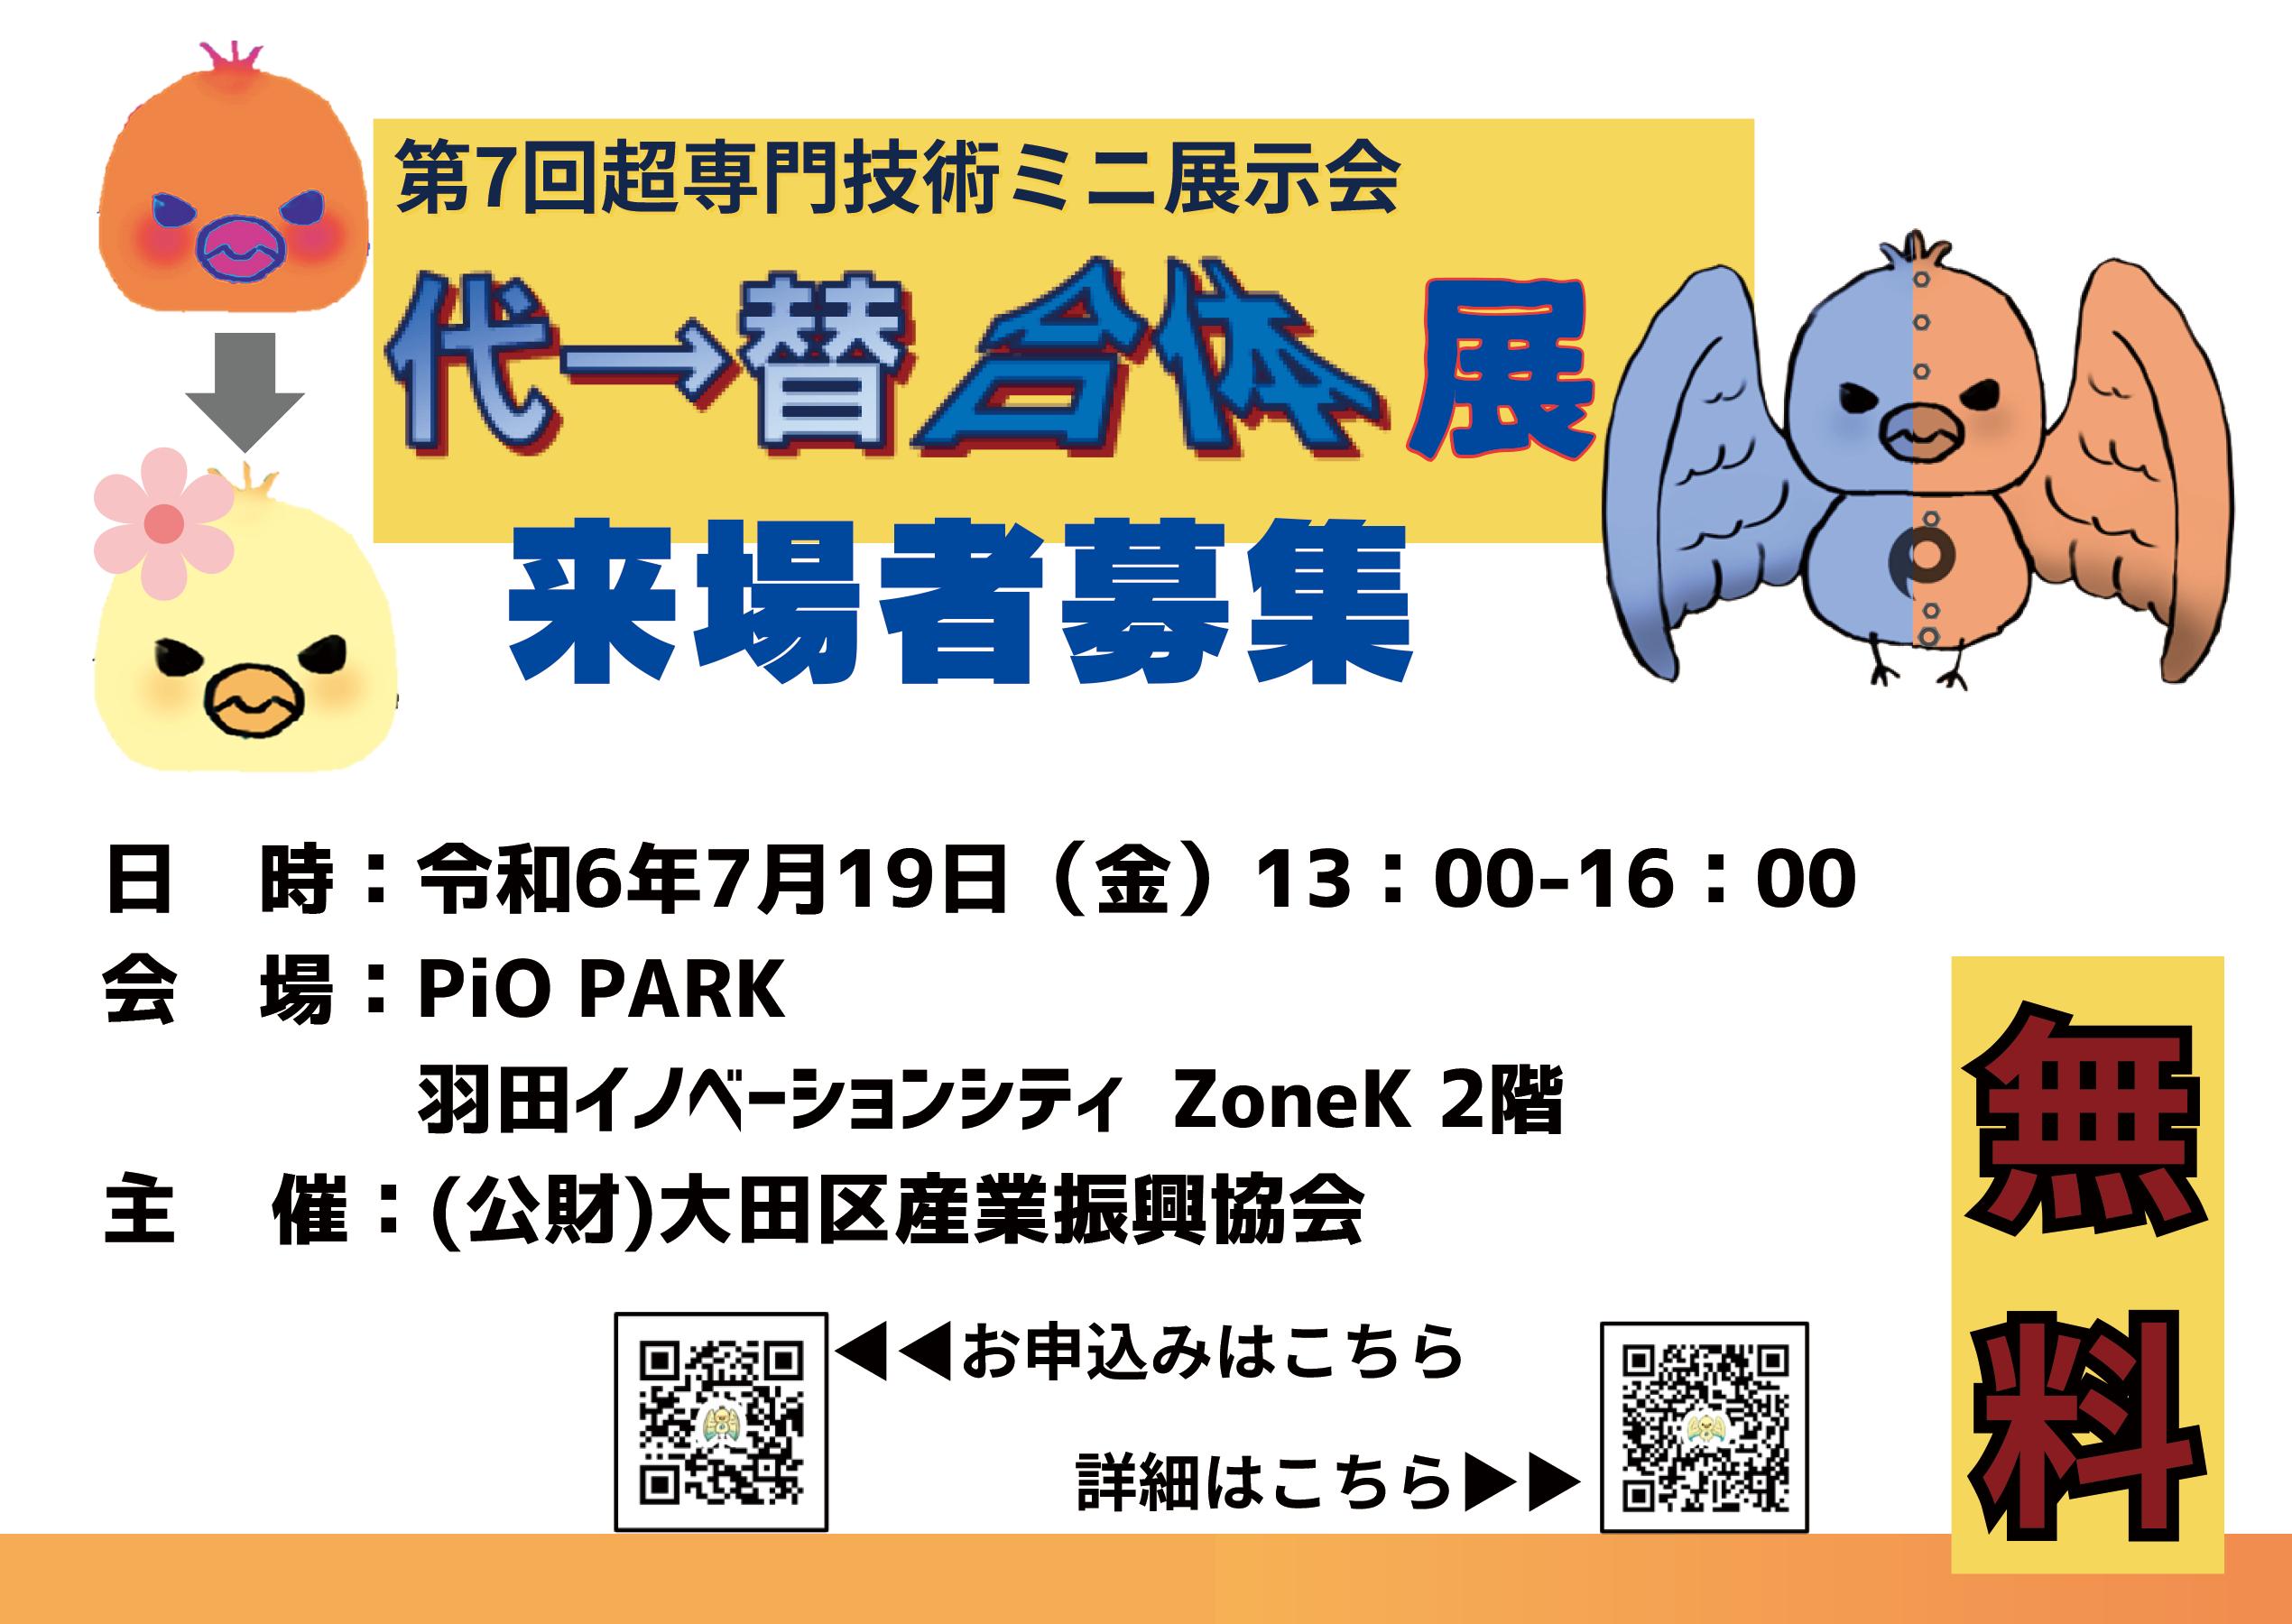 超専門技術ミニ展示会「代替合体展」を７月19日に羽田イノベーションシティにて開催